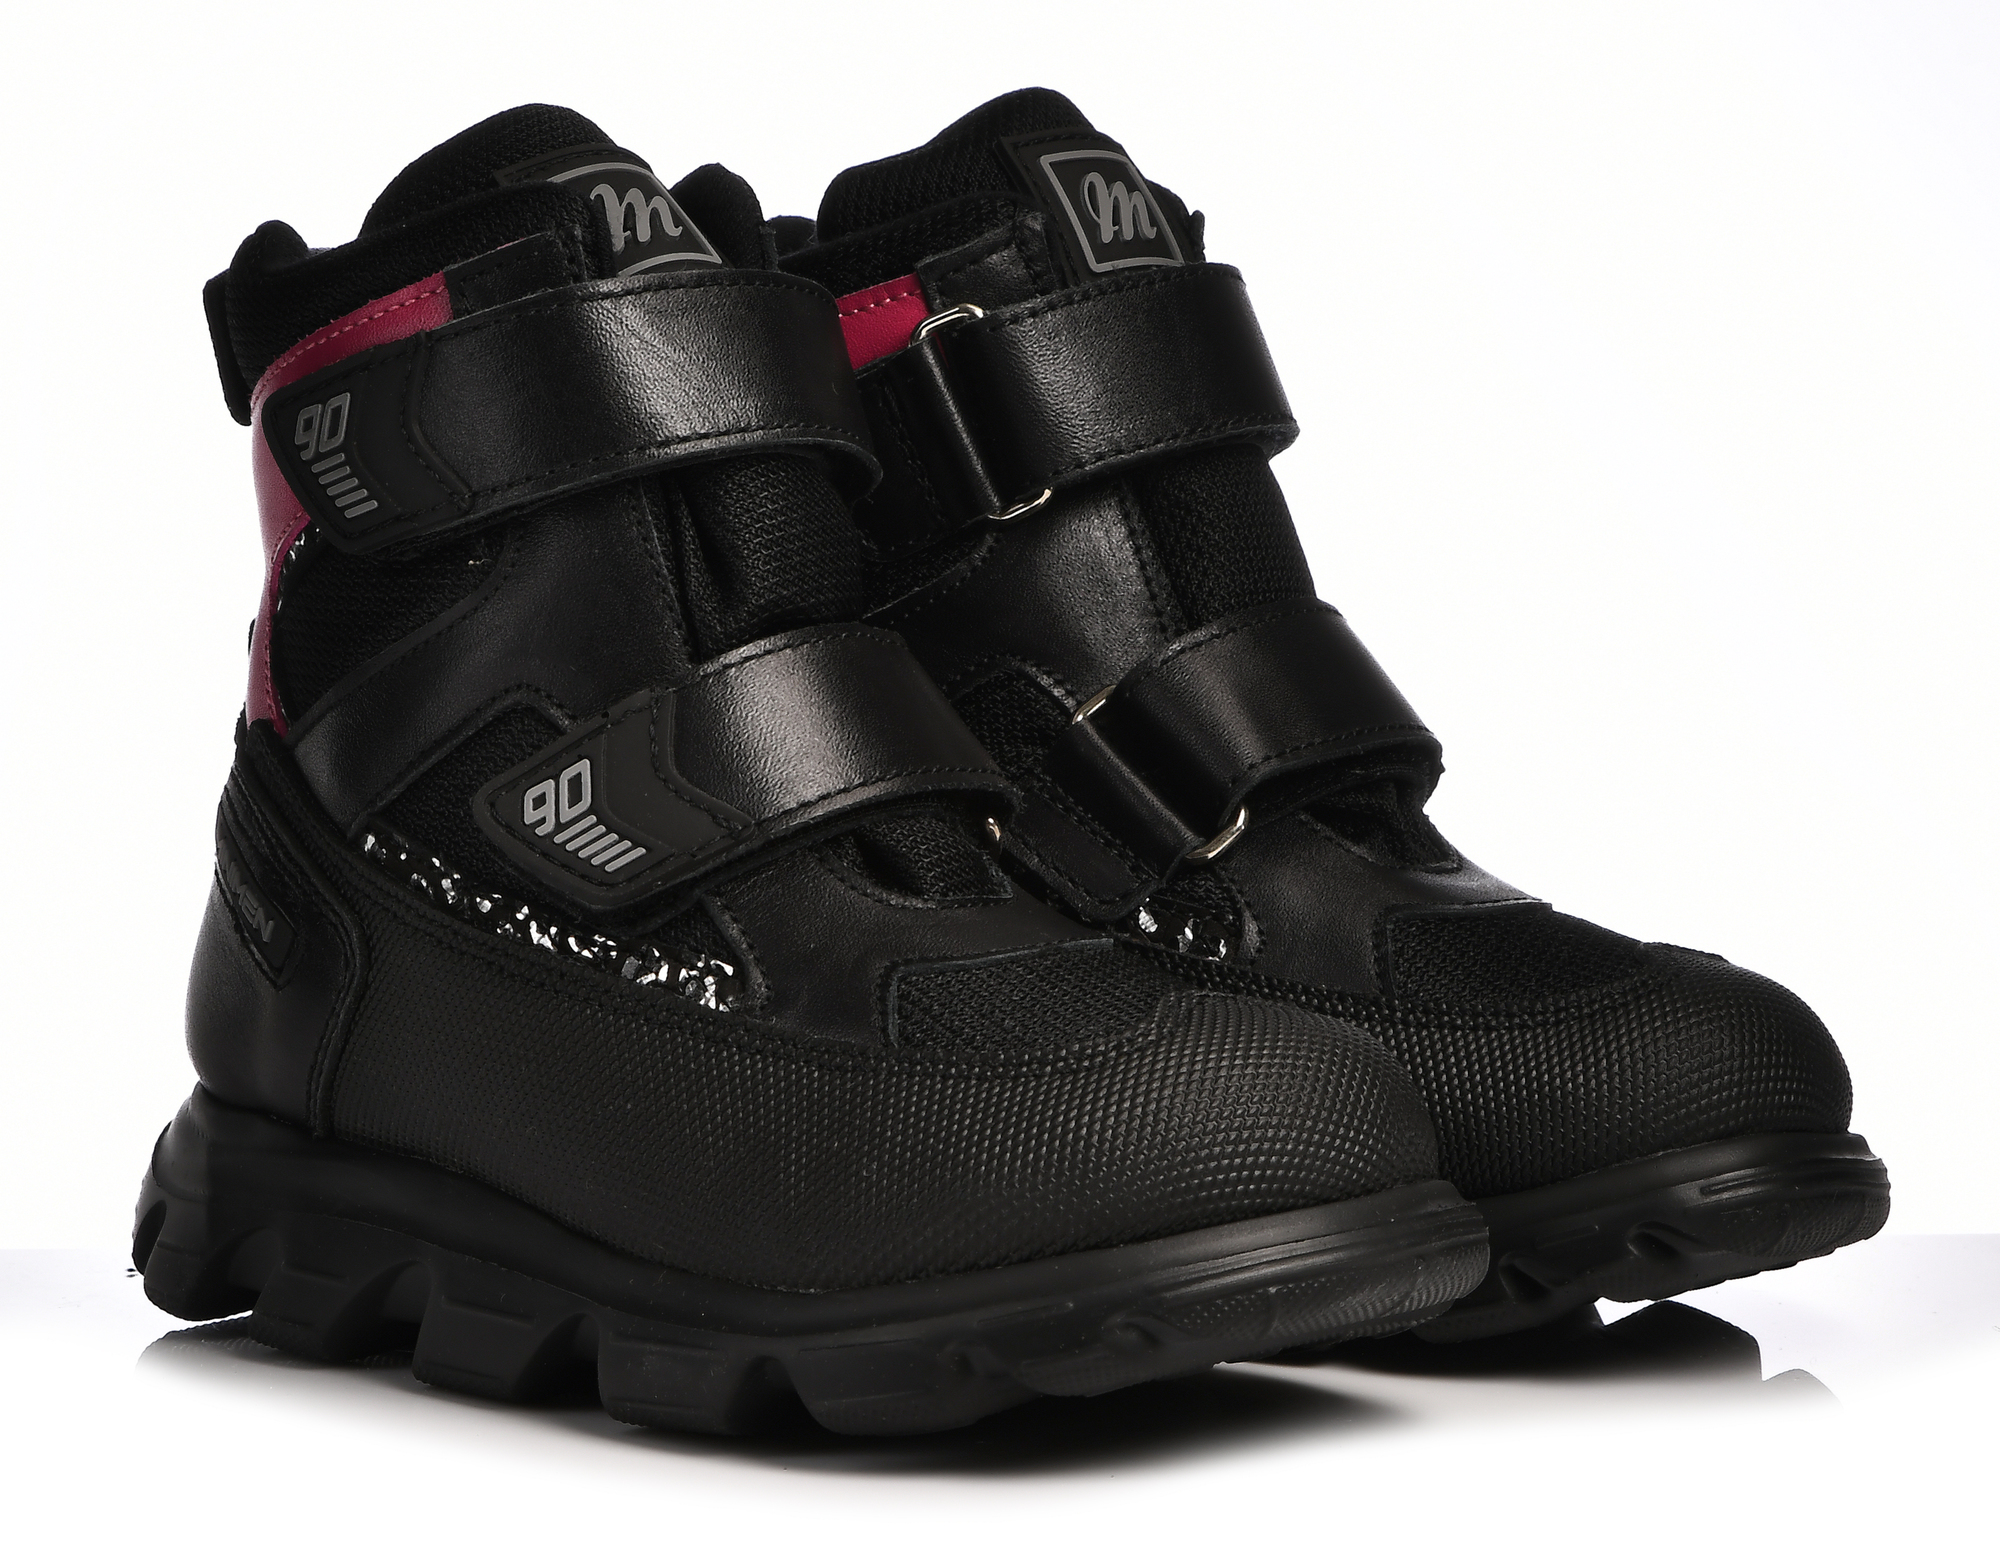 Ботинки Minimen для девочек, чёрные, размер 30, 2641-53-23B-04